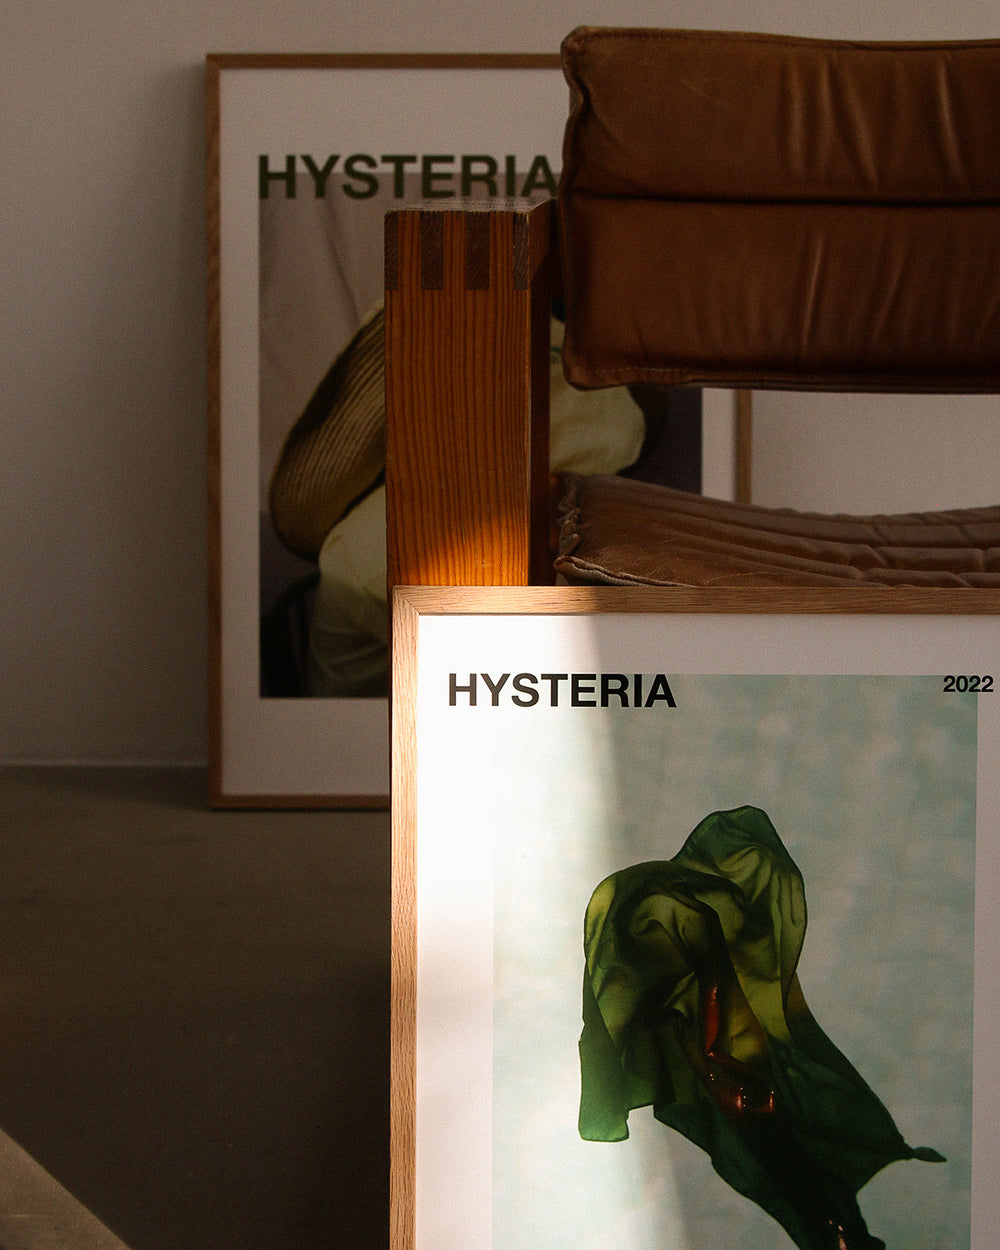 Hysteria by Amanda Gylling